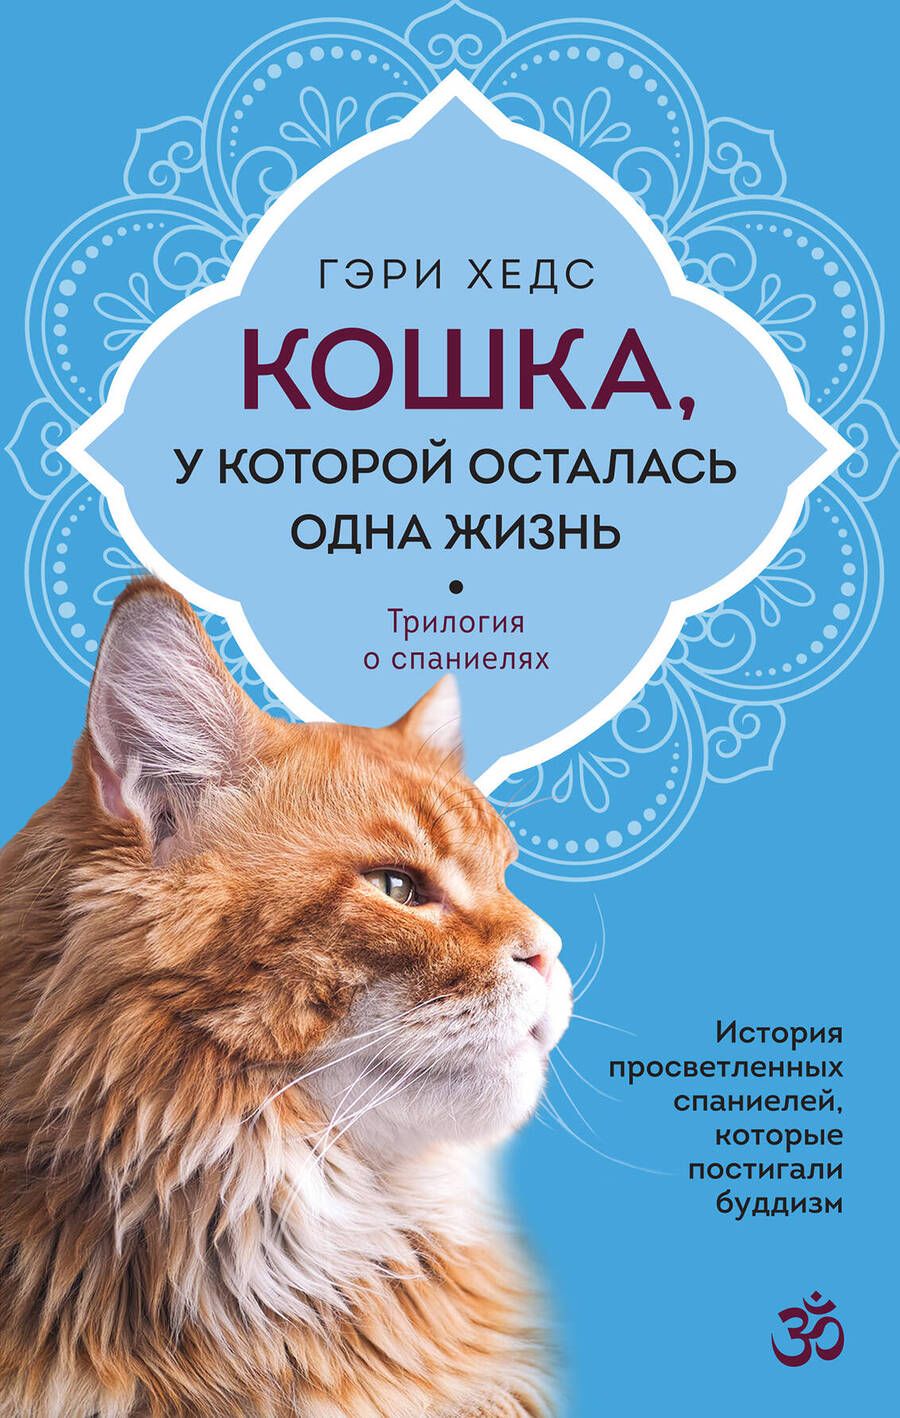 Обложка книги "Хедс: Кошка, у которой осталась одна жизнь"